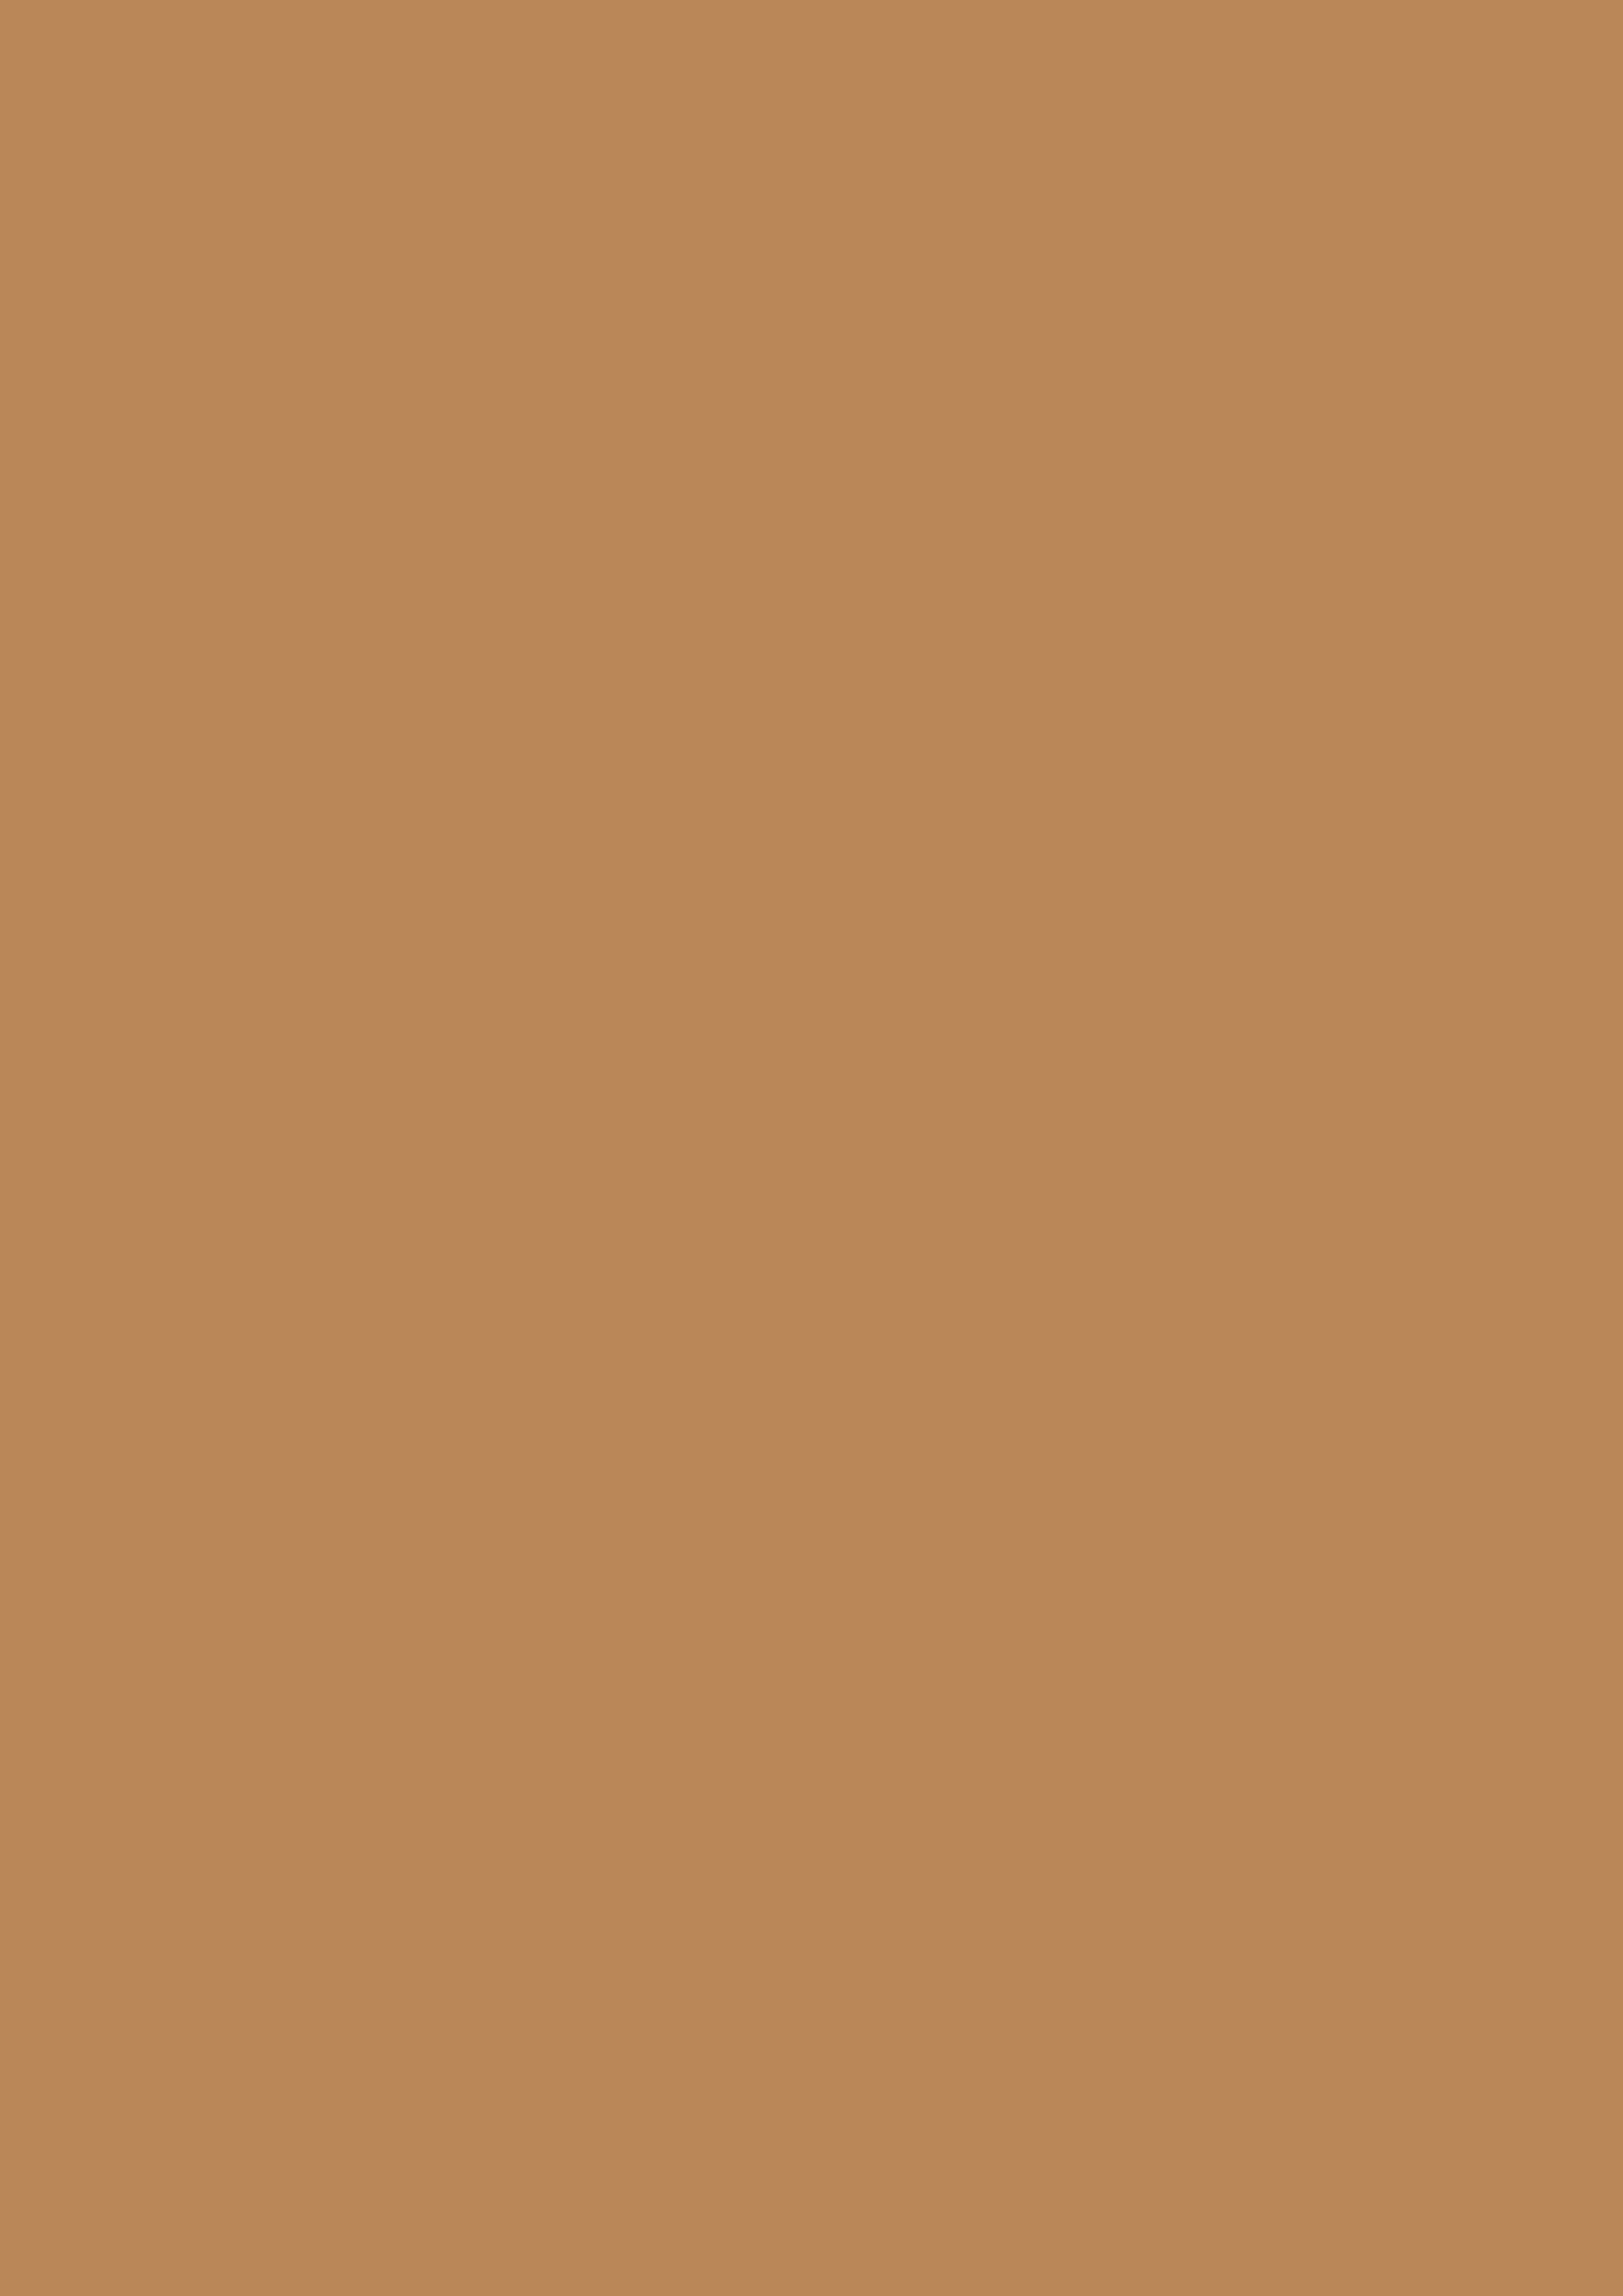 2480x3508 Deer Solid Color Background